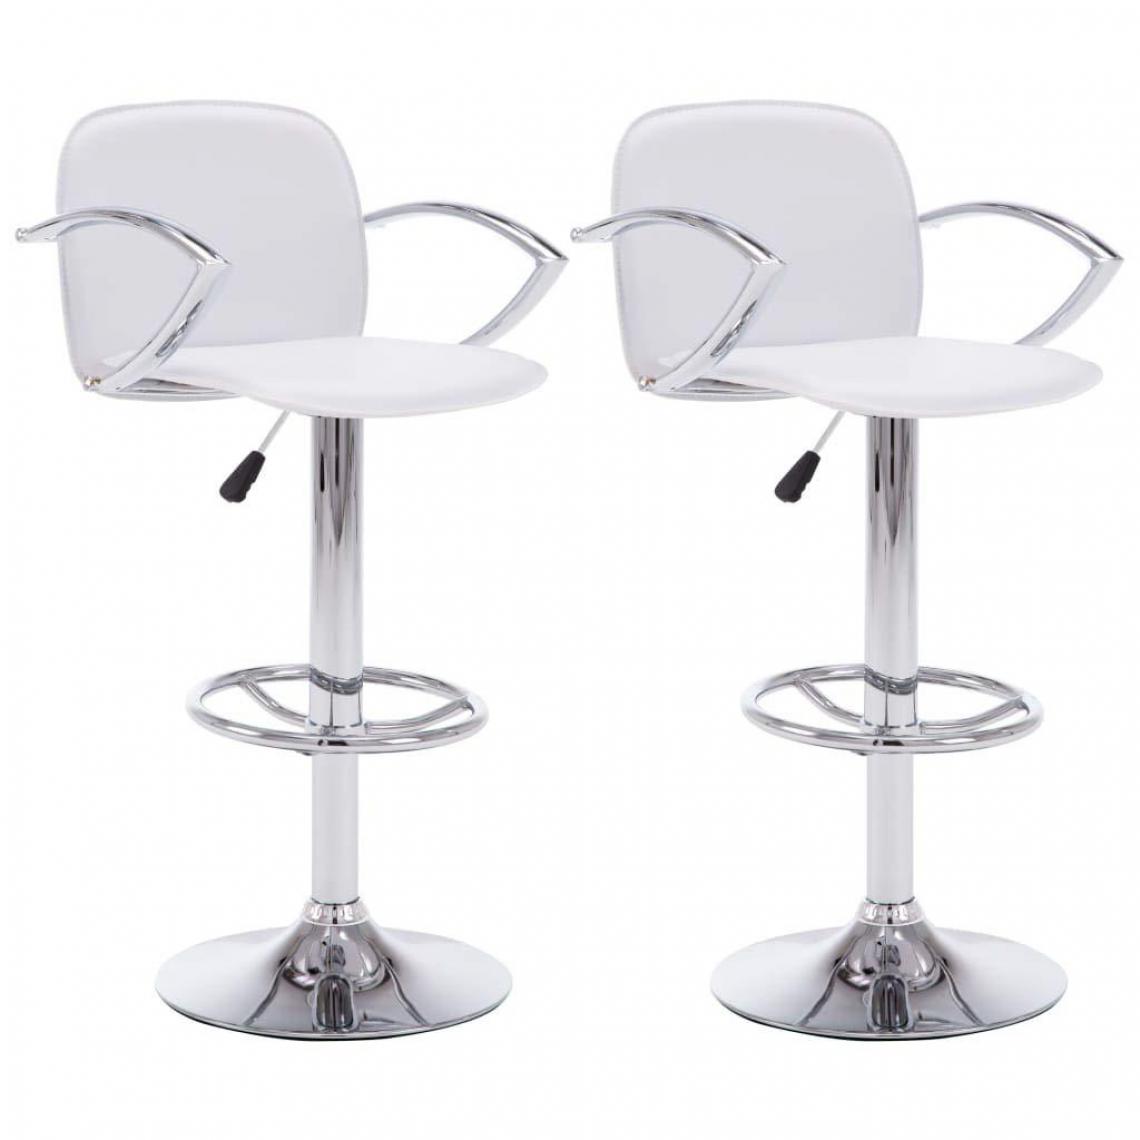 Helloshop26 - Lot de deux tabourets de bar design chaise siège avec accoudoirs similicuir blanc 1202108 - Tabourets